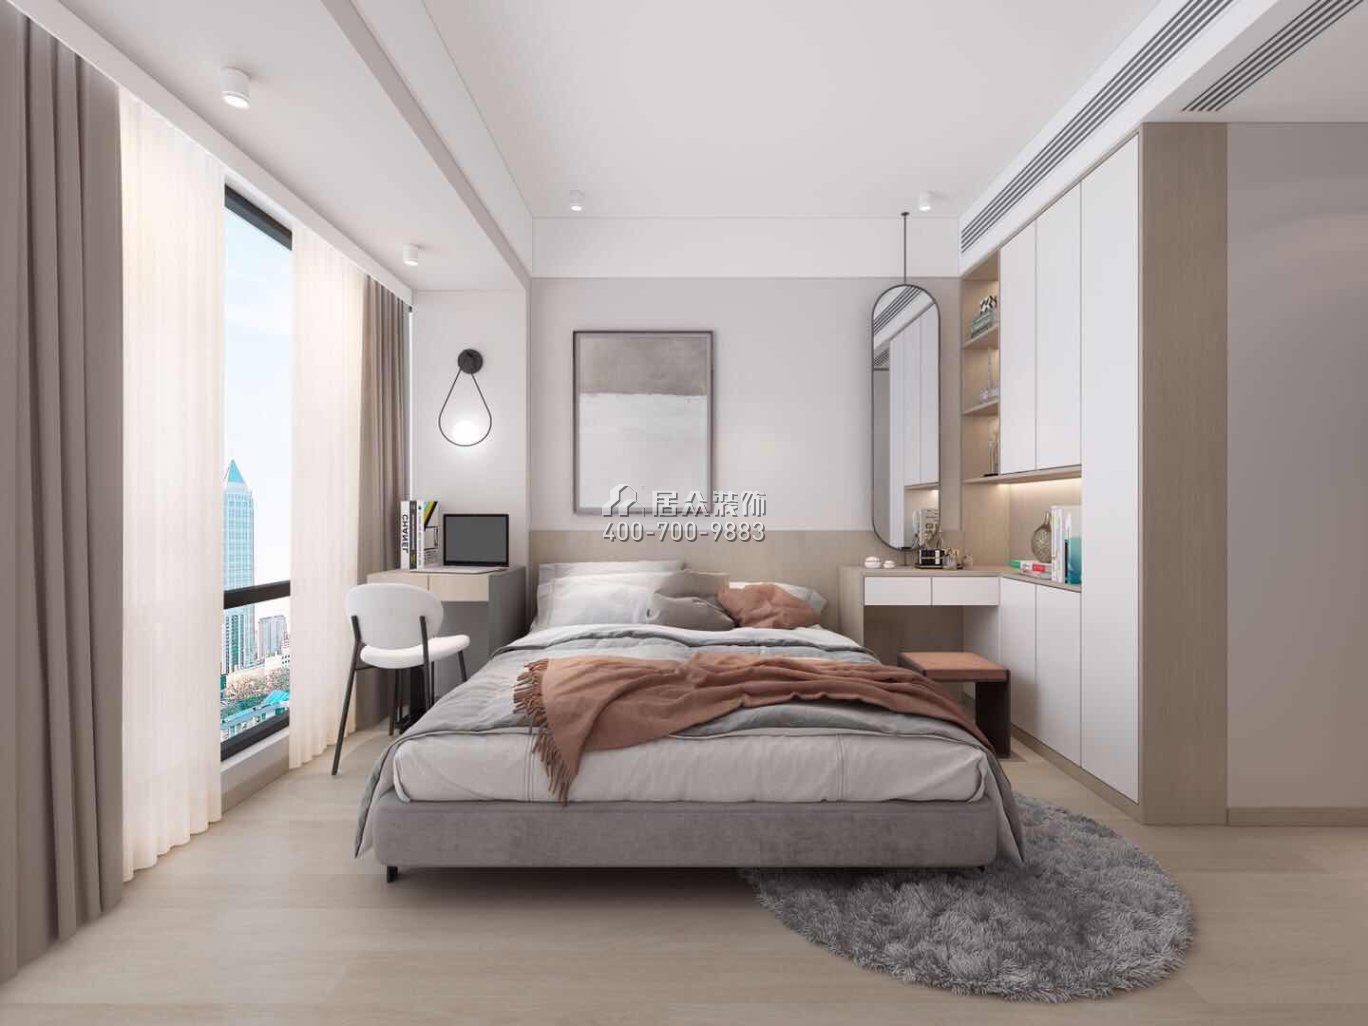 藍月灣畔77平方米現代簡約風格平層戶型臥室裝修效果圖